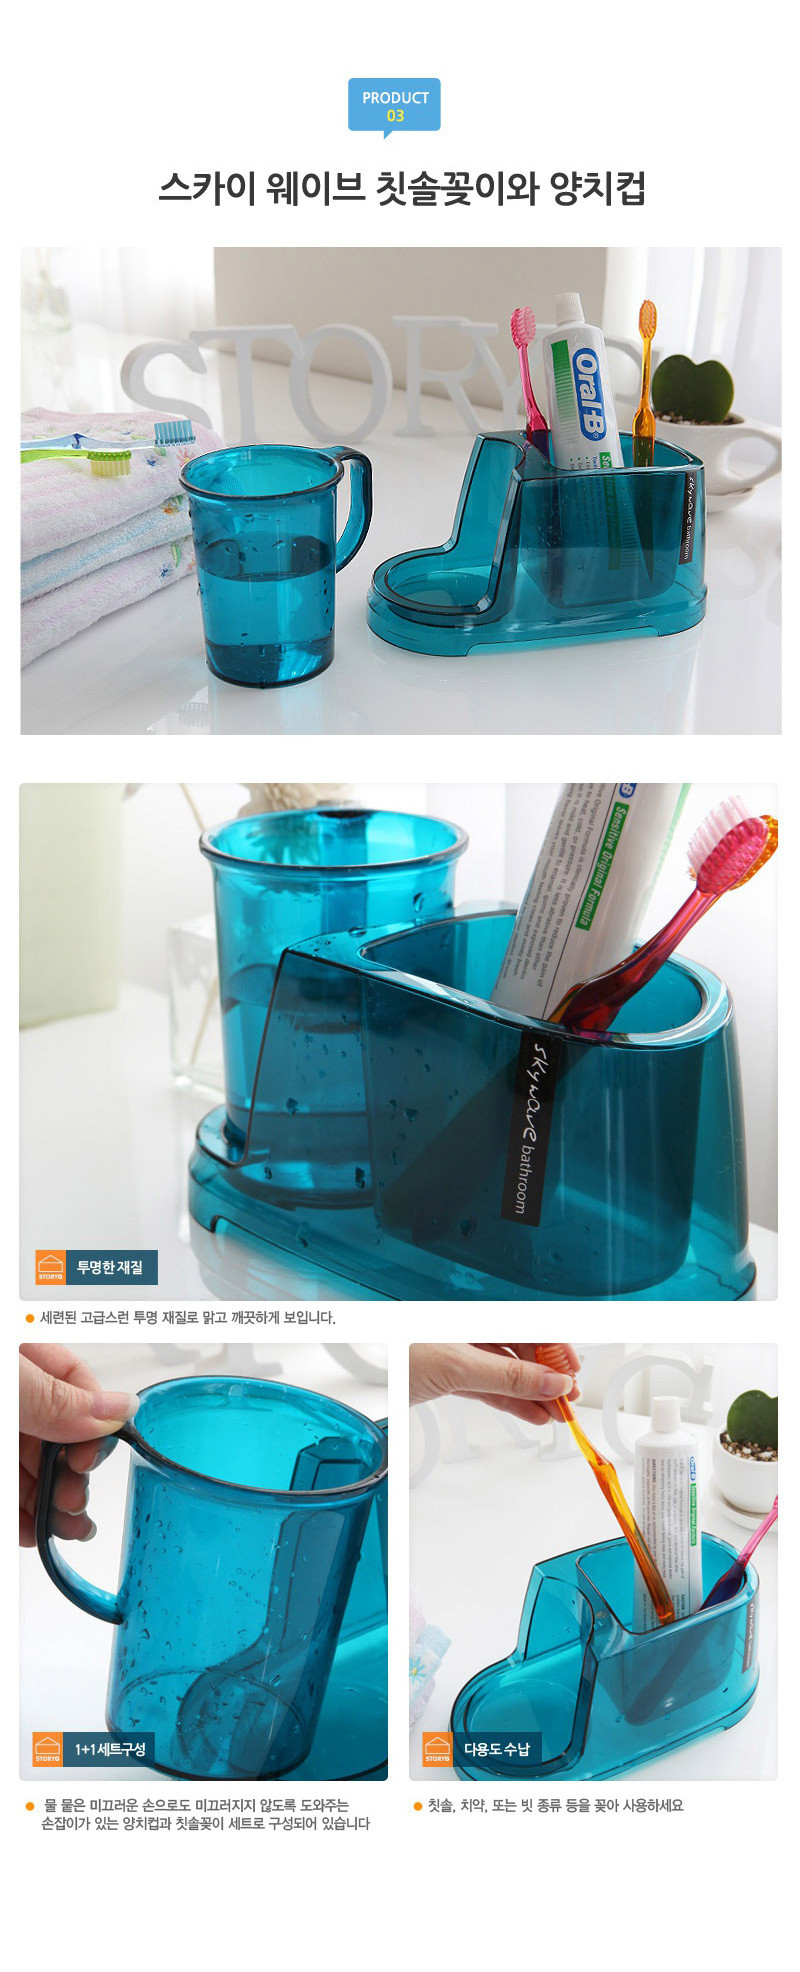 CHANGSIN 韩国进口简约浴室刷牙杯洗漱牙具套装 卫浴五件套